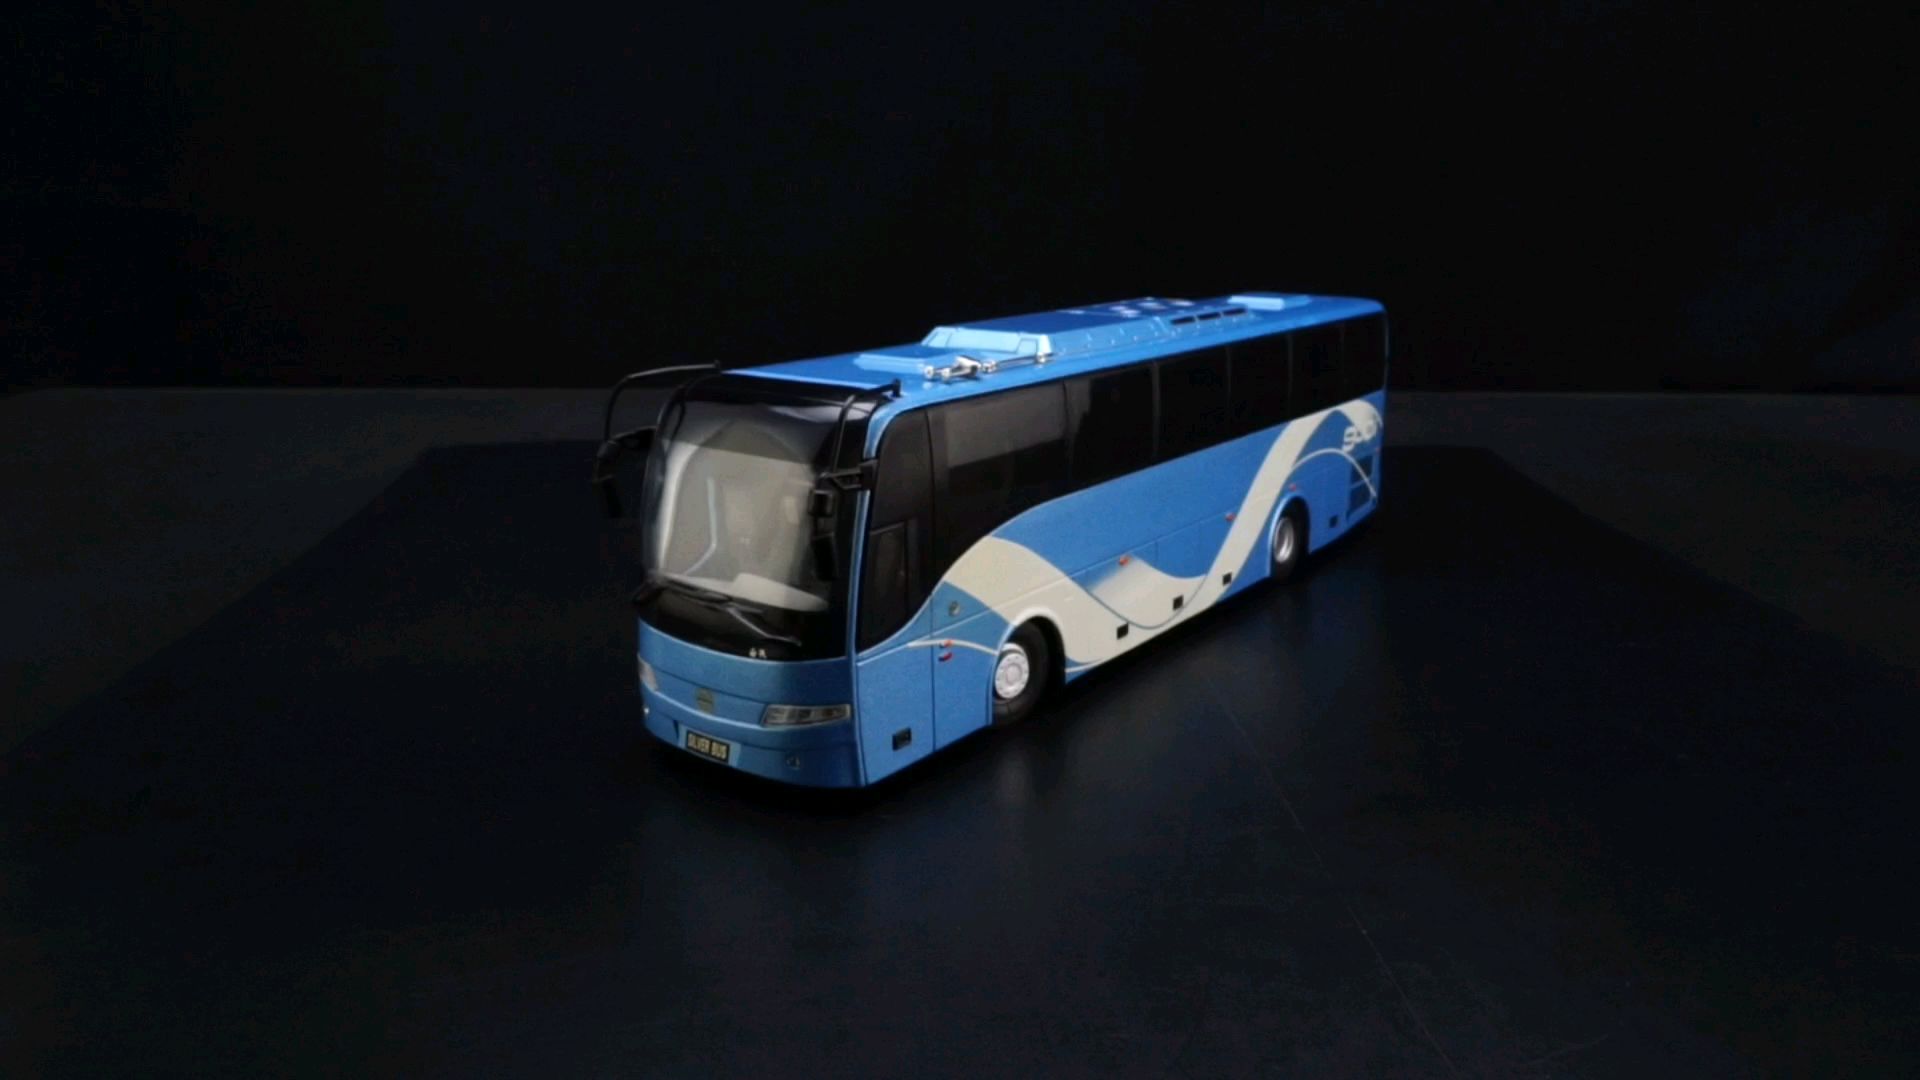 2010西沃900i豪华巴士1：42，东晓汽车模型收藏馆藏品